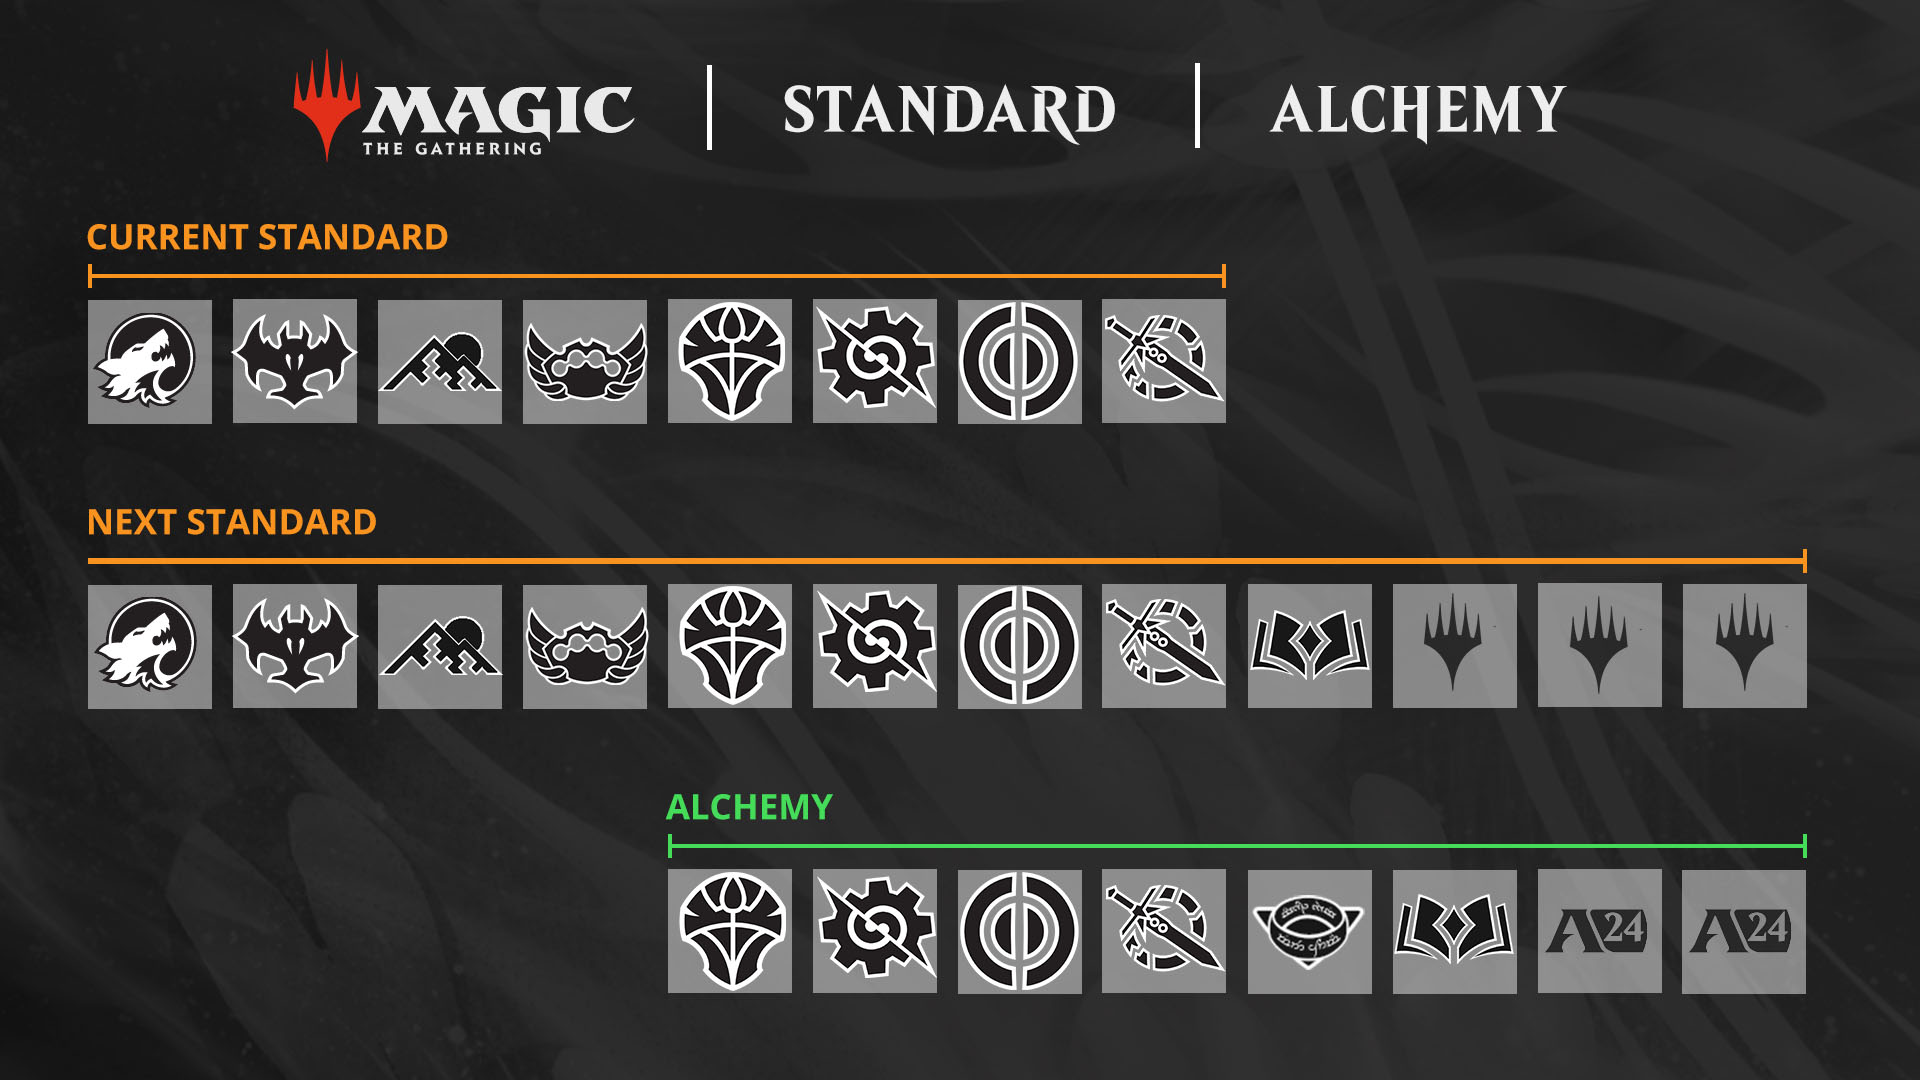 Icone che mostrano le espansioni che entreranno e usciranno dai formati Standard e Alchemy per il nuovo anno di Magic a partire da settembre con l’uscita di Terre Selvagge di Eldraine